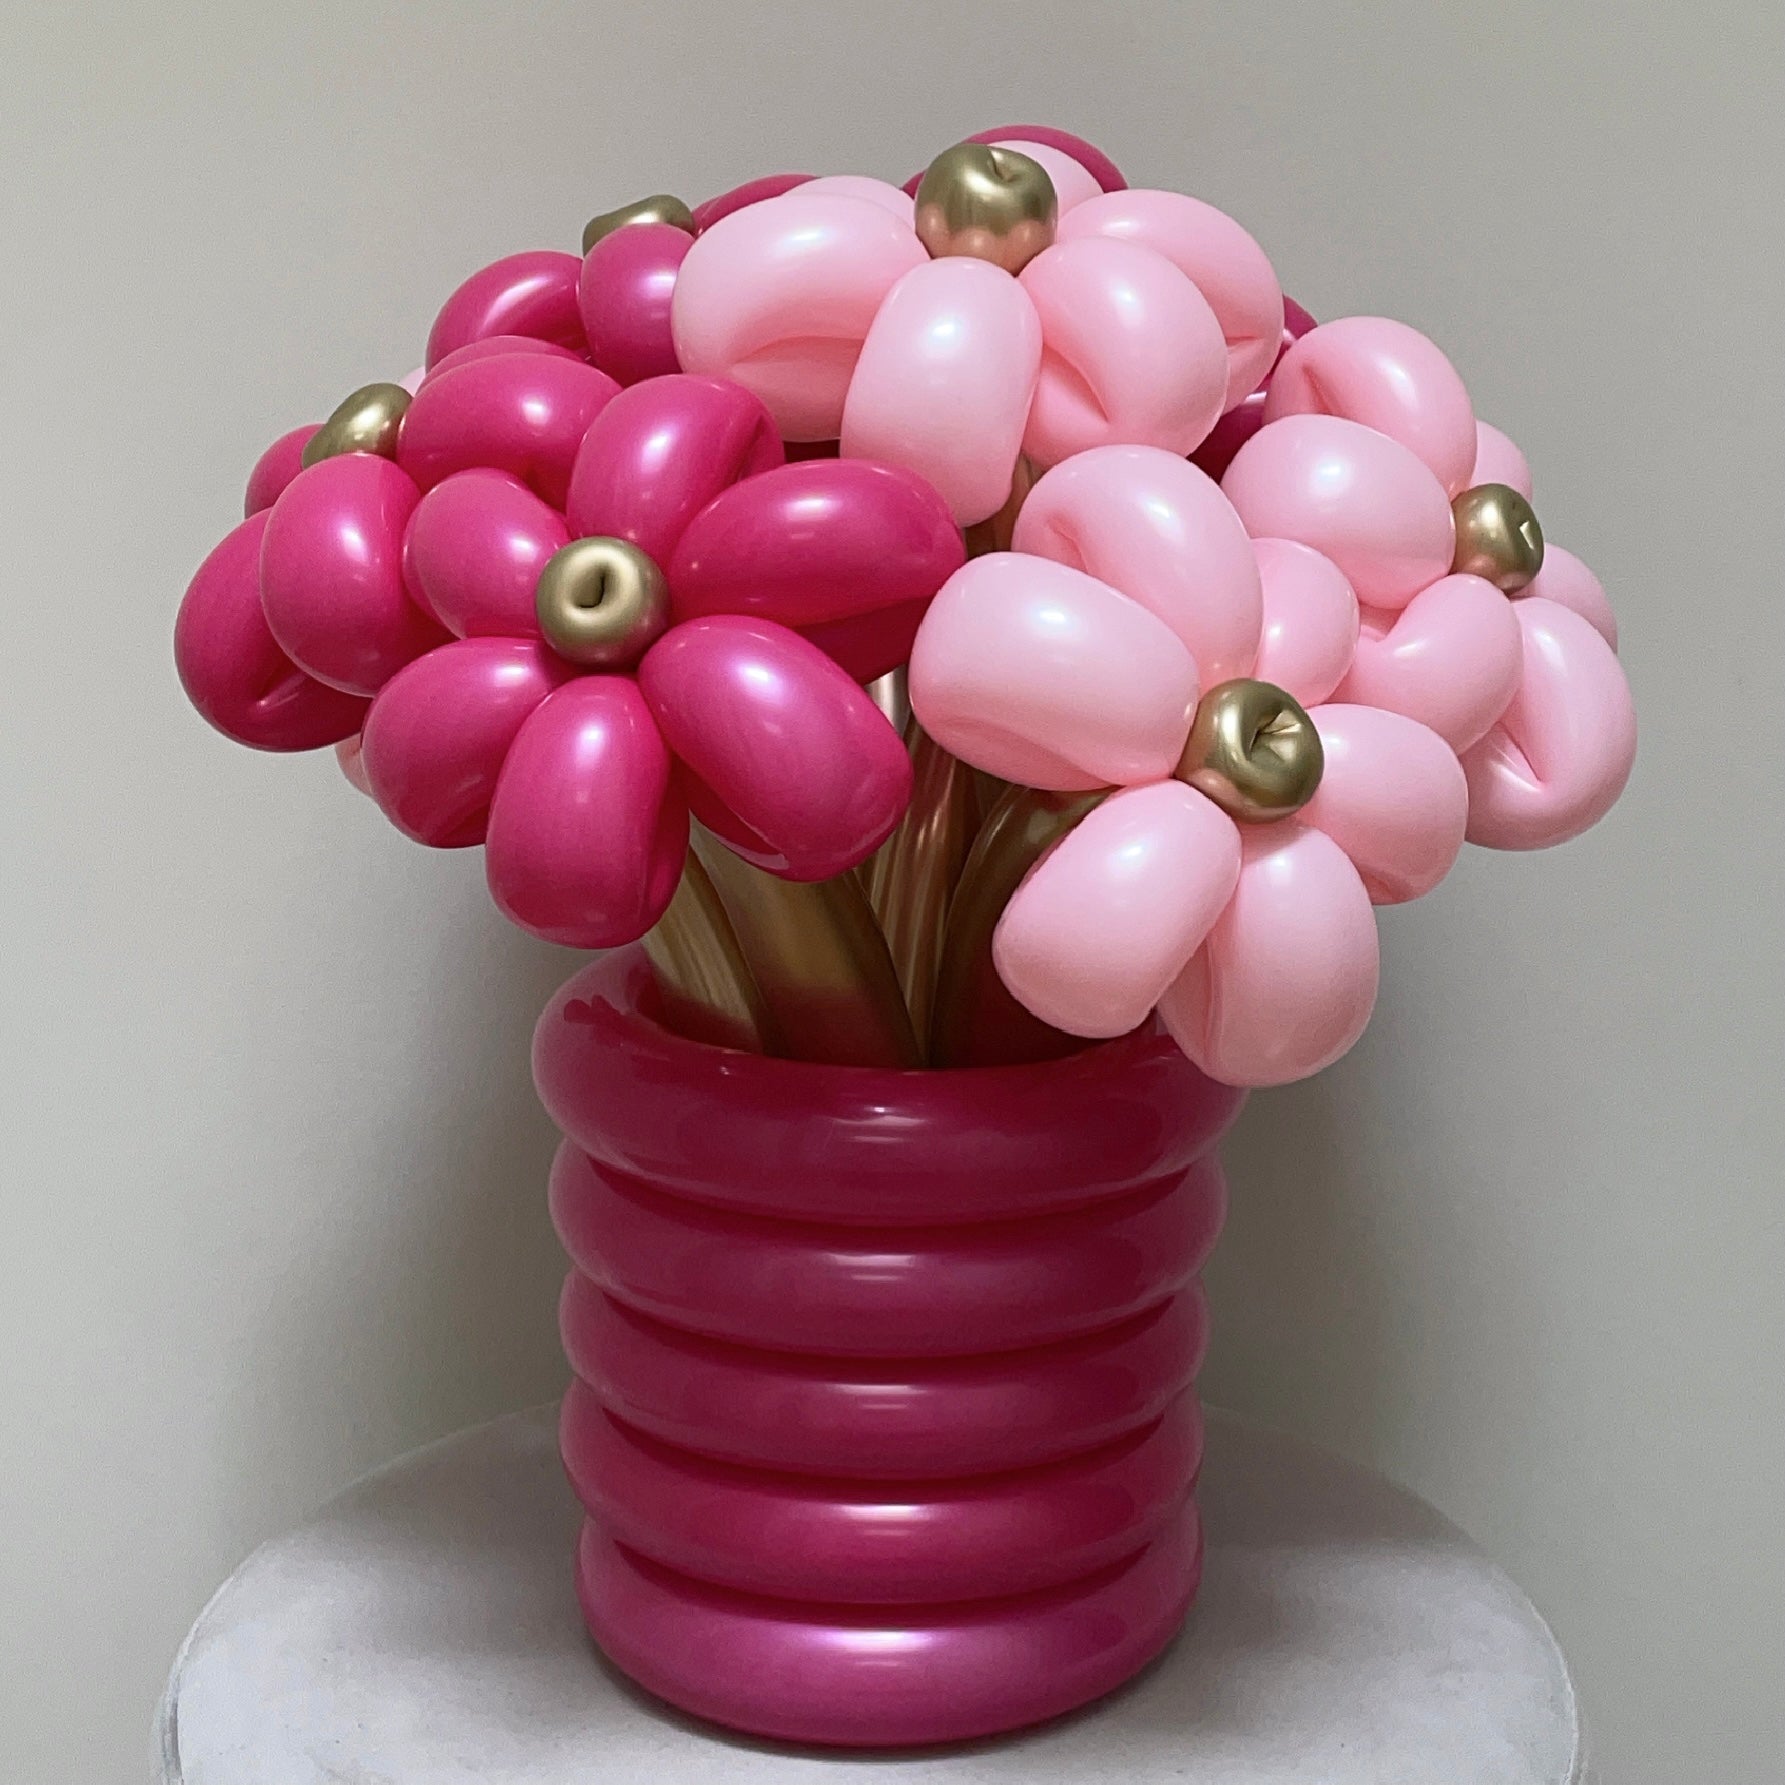 Flower Balloon Bouquet In Vase